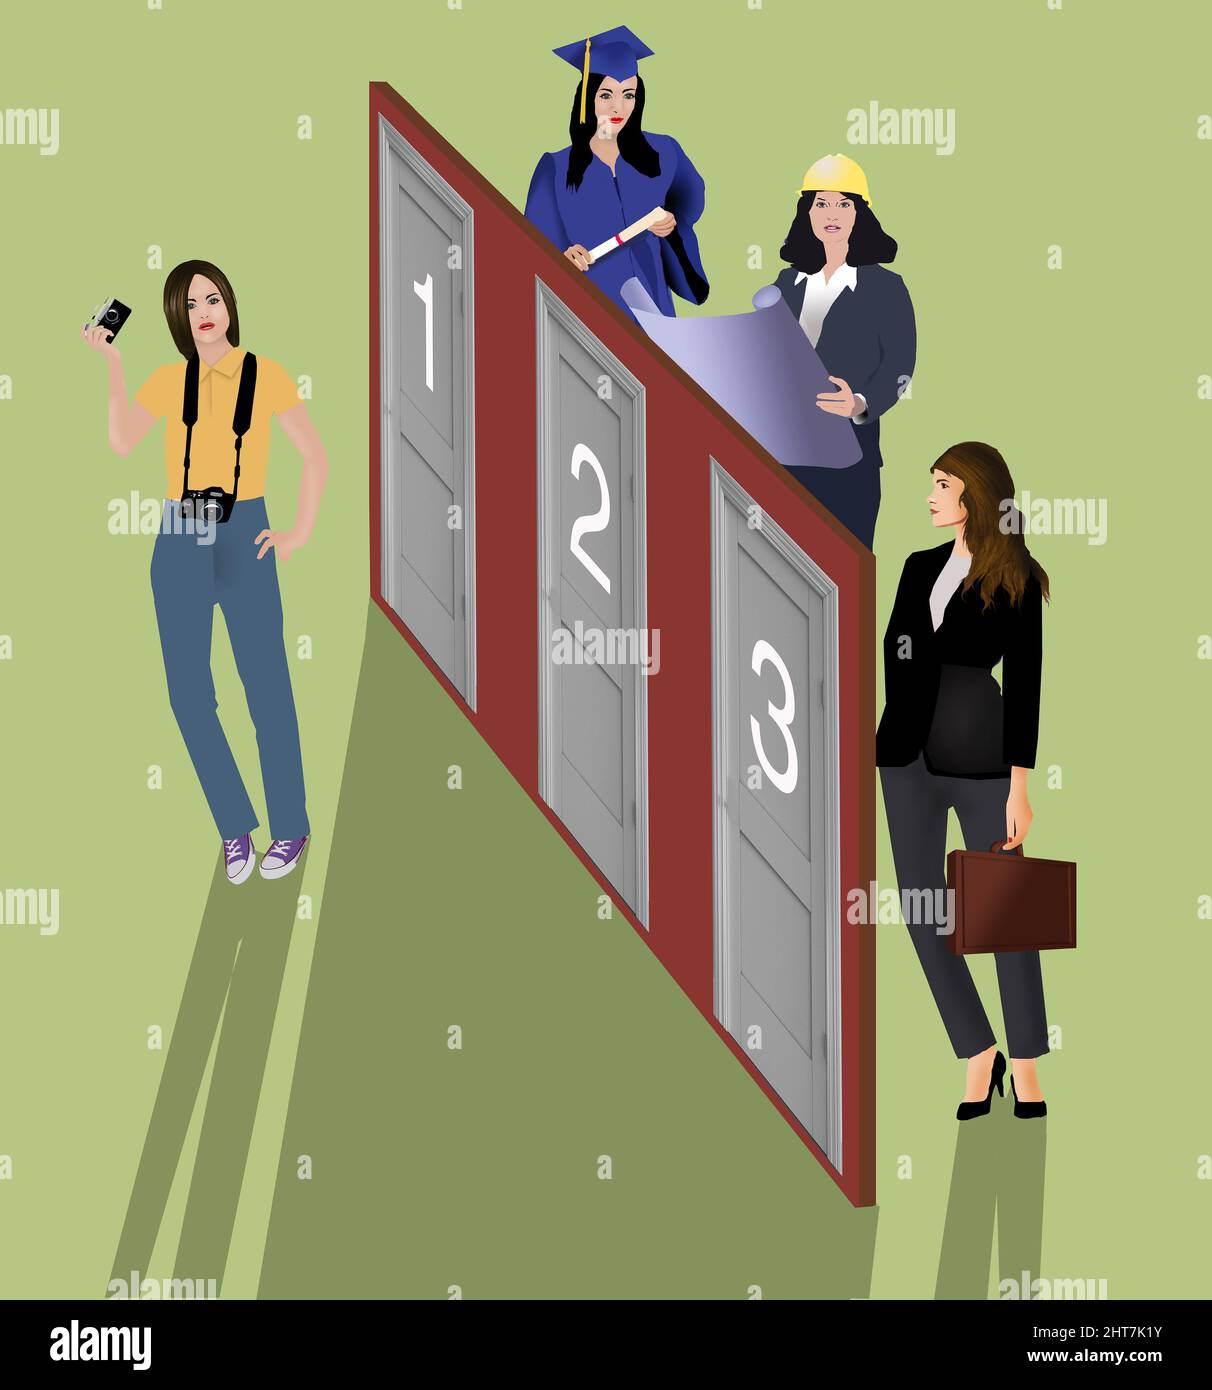 Trois types de personnes de carrière sont vues derrière les portes comme une autre personne a décidé quel chemin de caret choisir dans cette illustration de 3-d. Banque D'Images